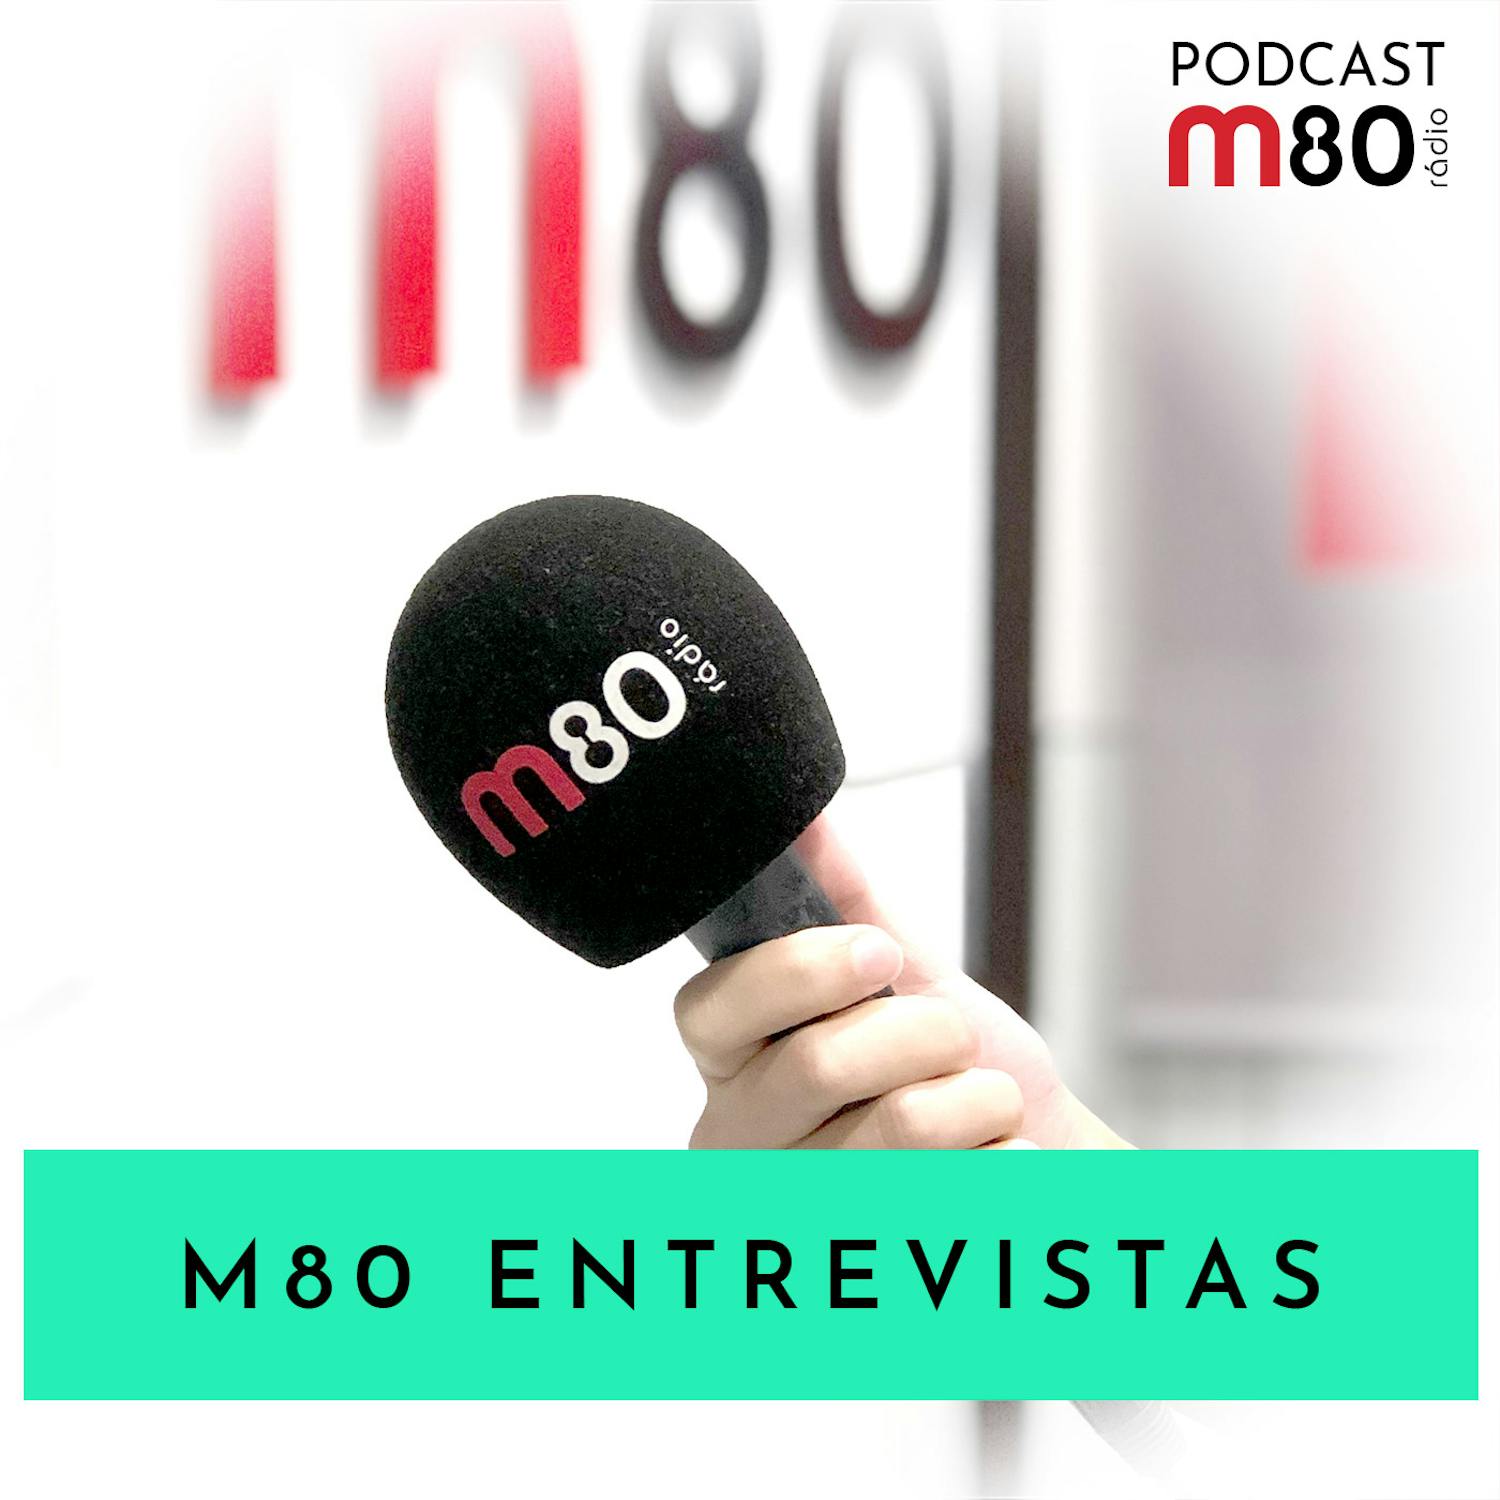 M80 Entrevistas